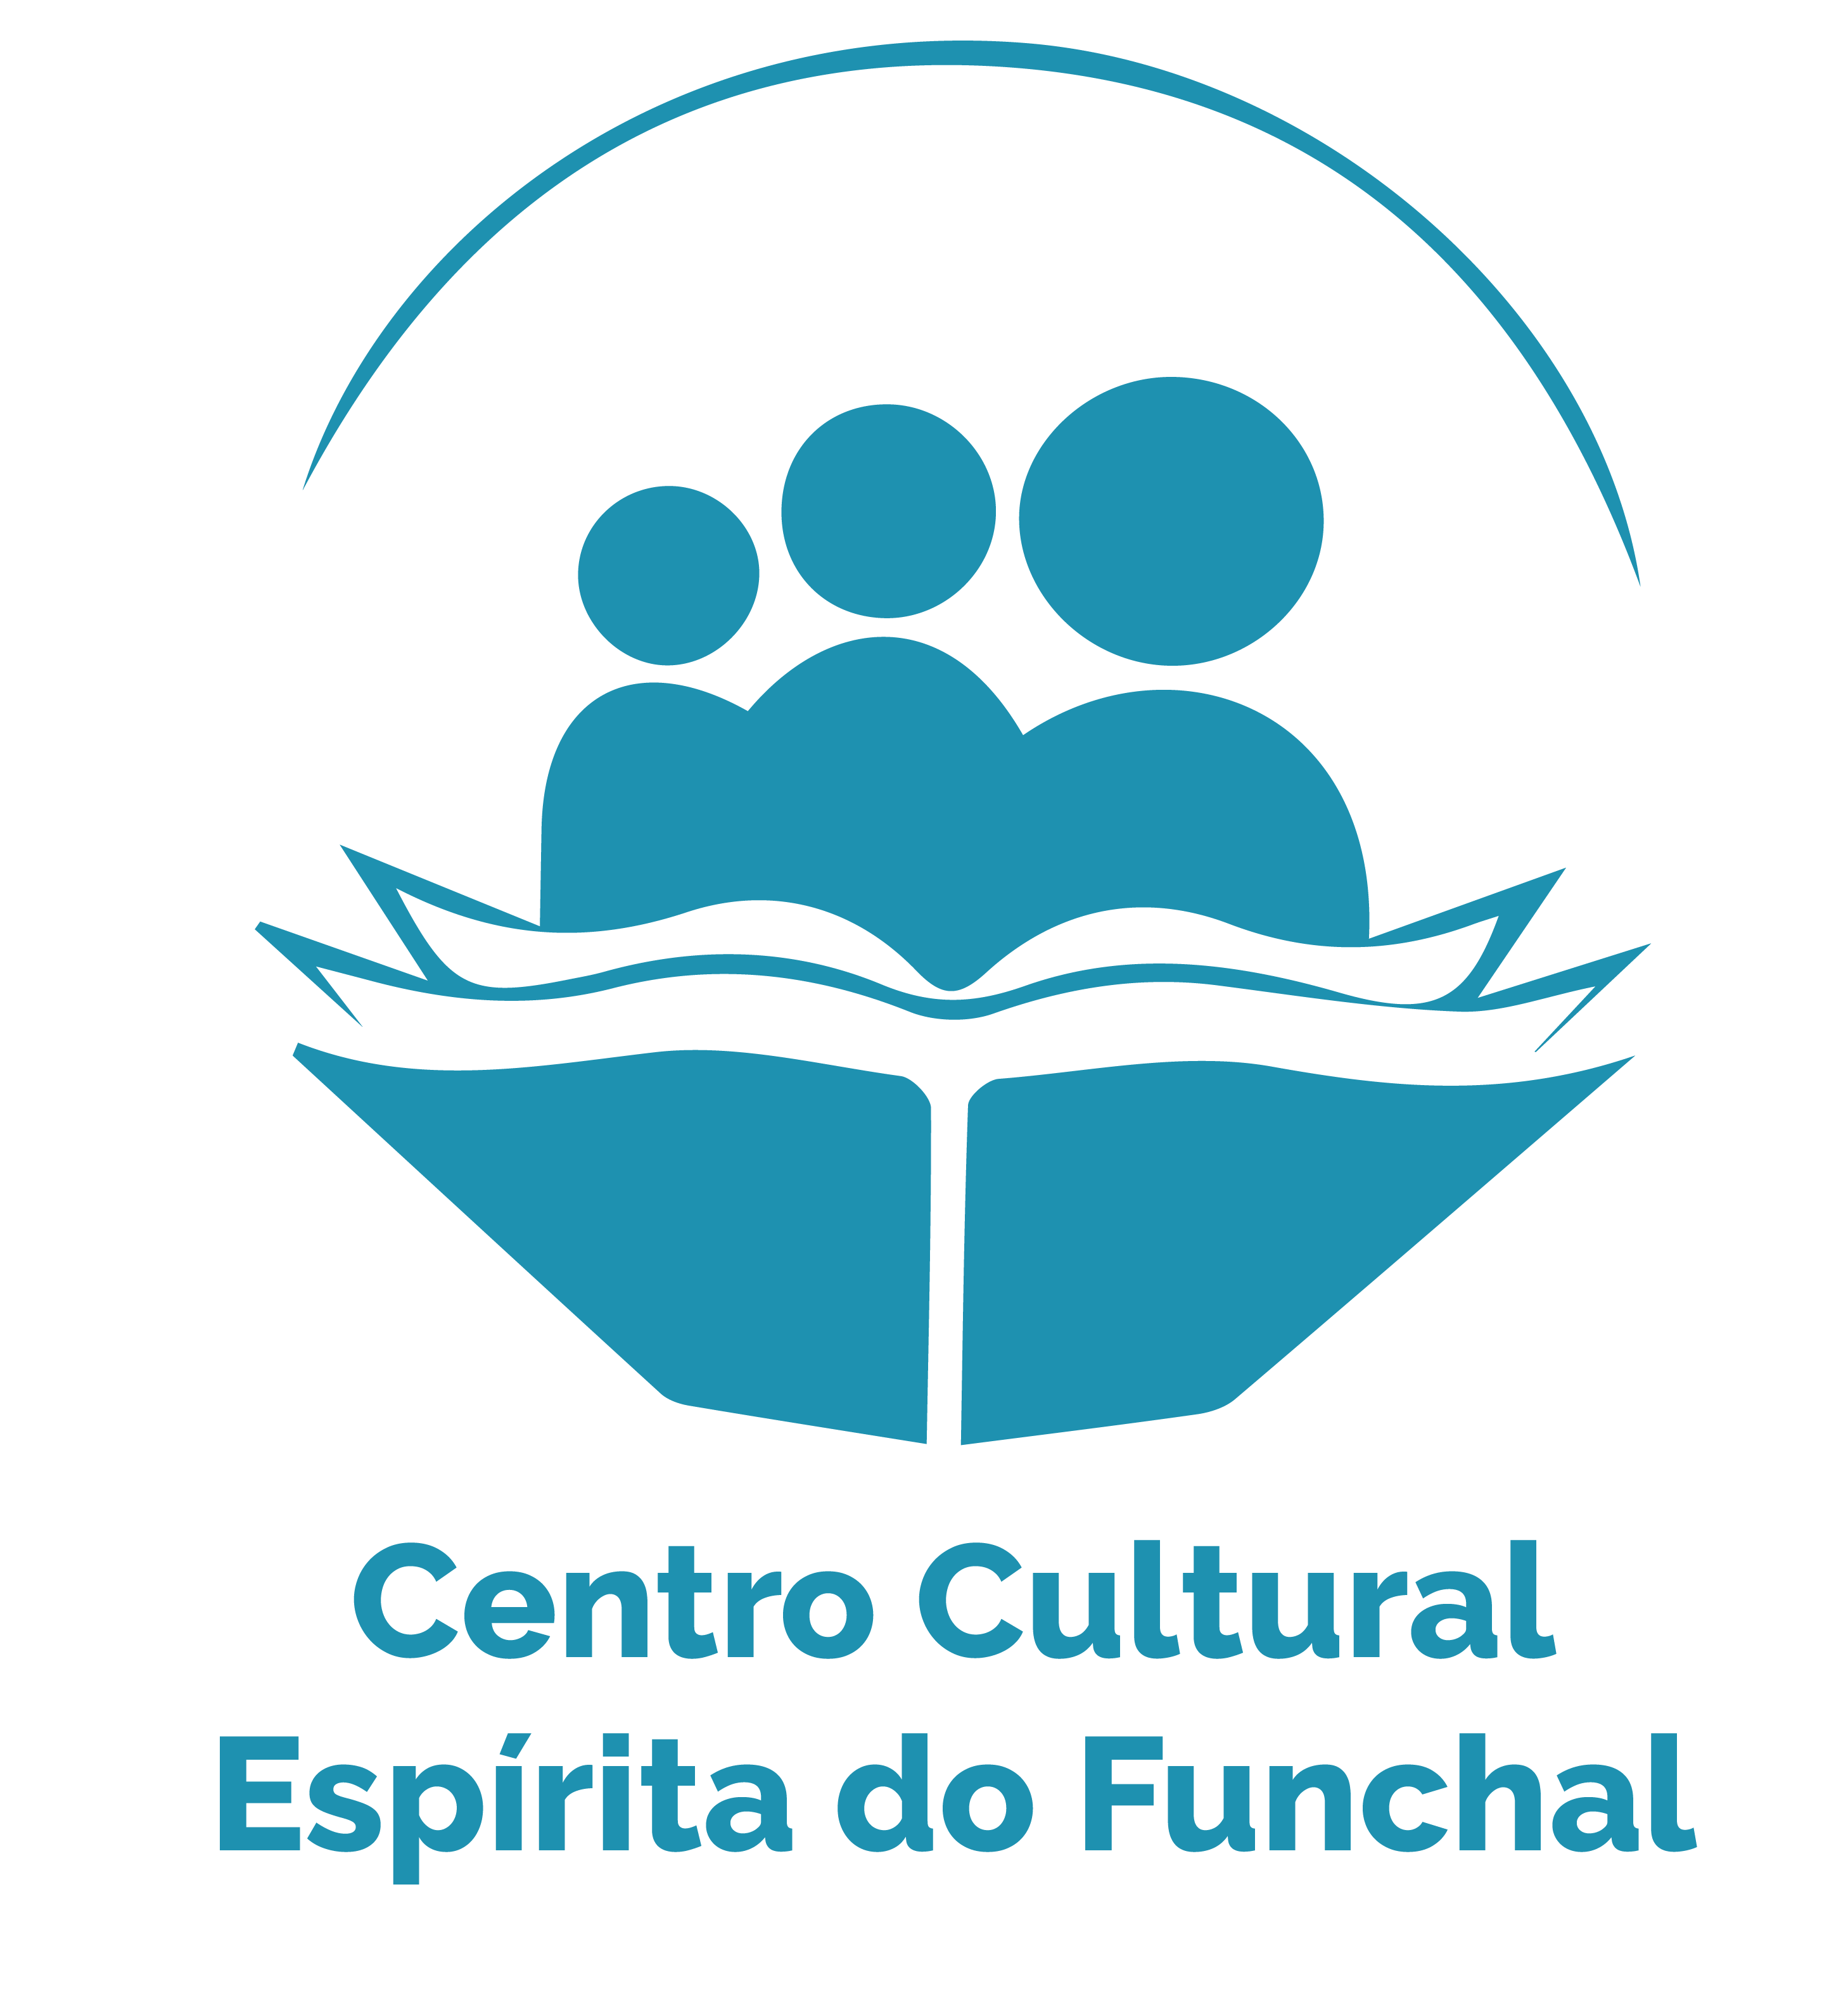 Centro Cultural Espírita do Funchal